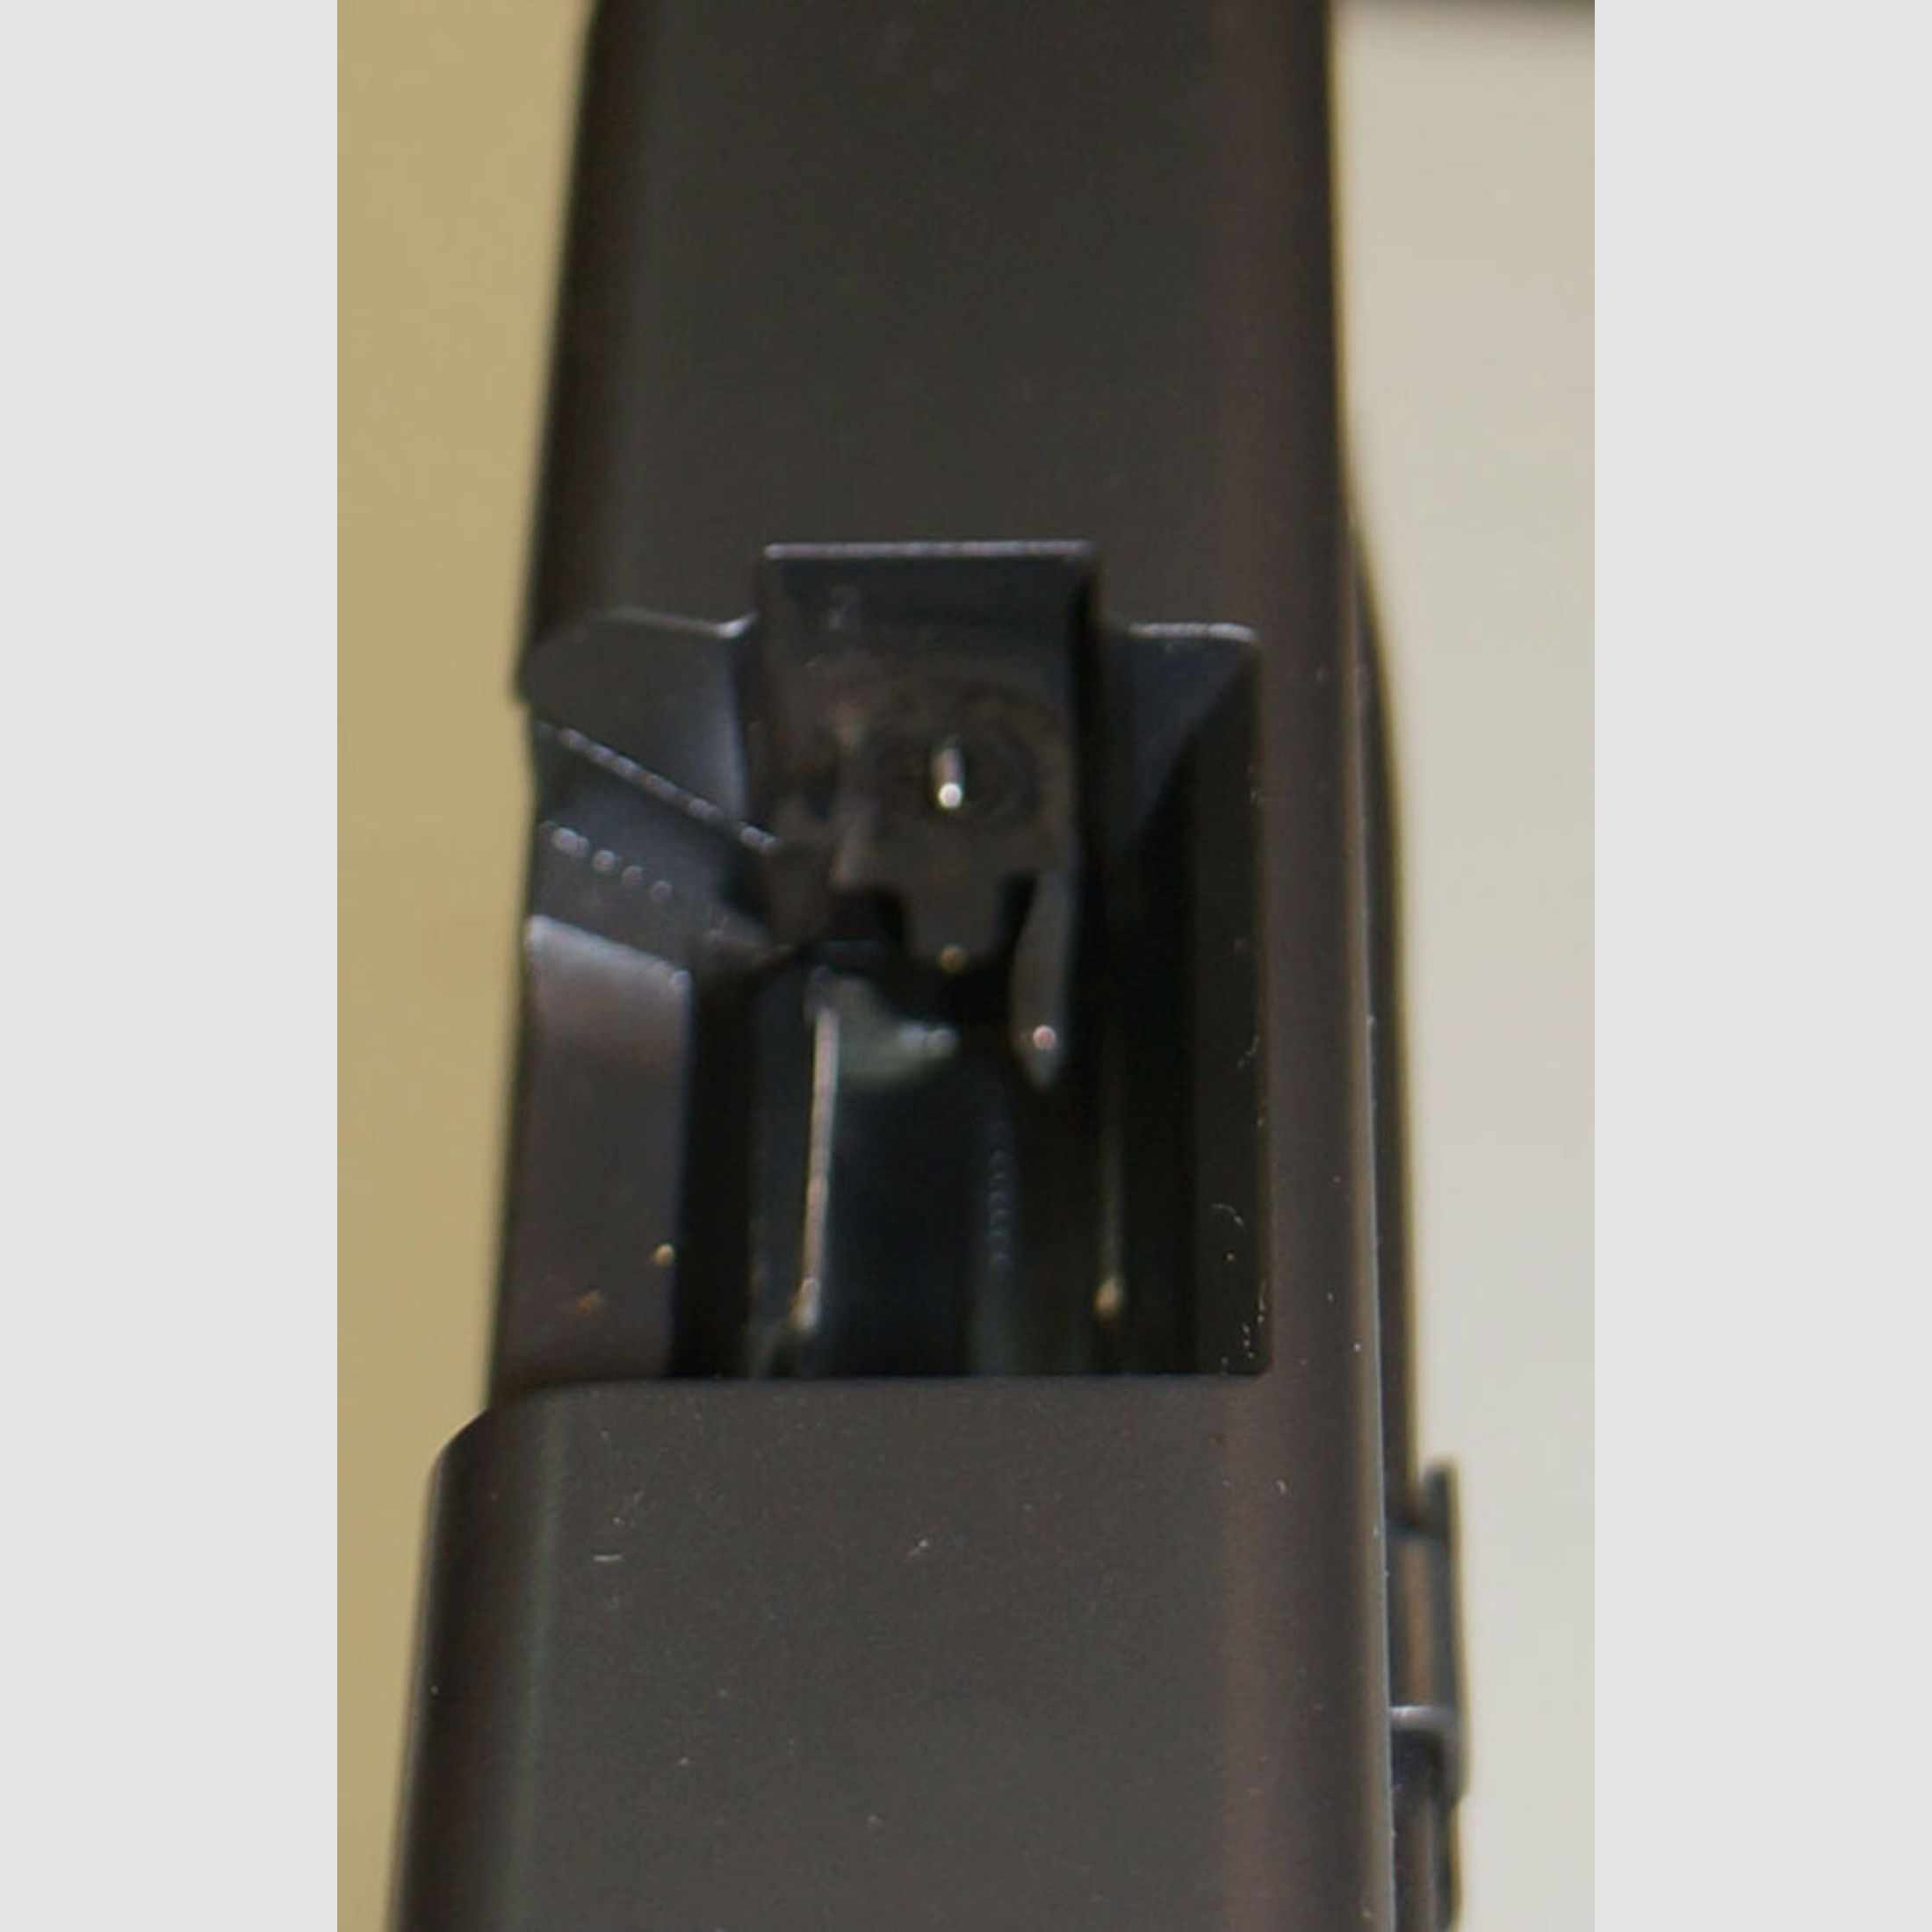 Glock	 Pistole Glock 17 Gen4 im Kaliber 9mm Para ( 9x19 ) Inkl. Zubehör